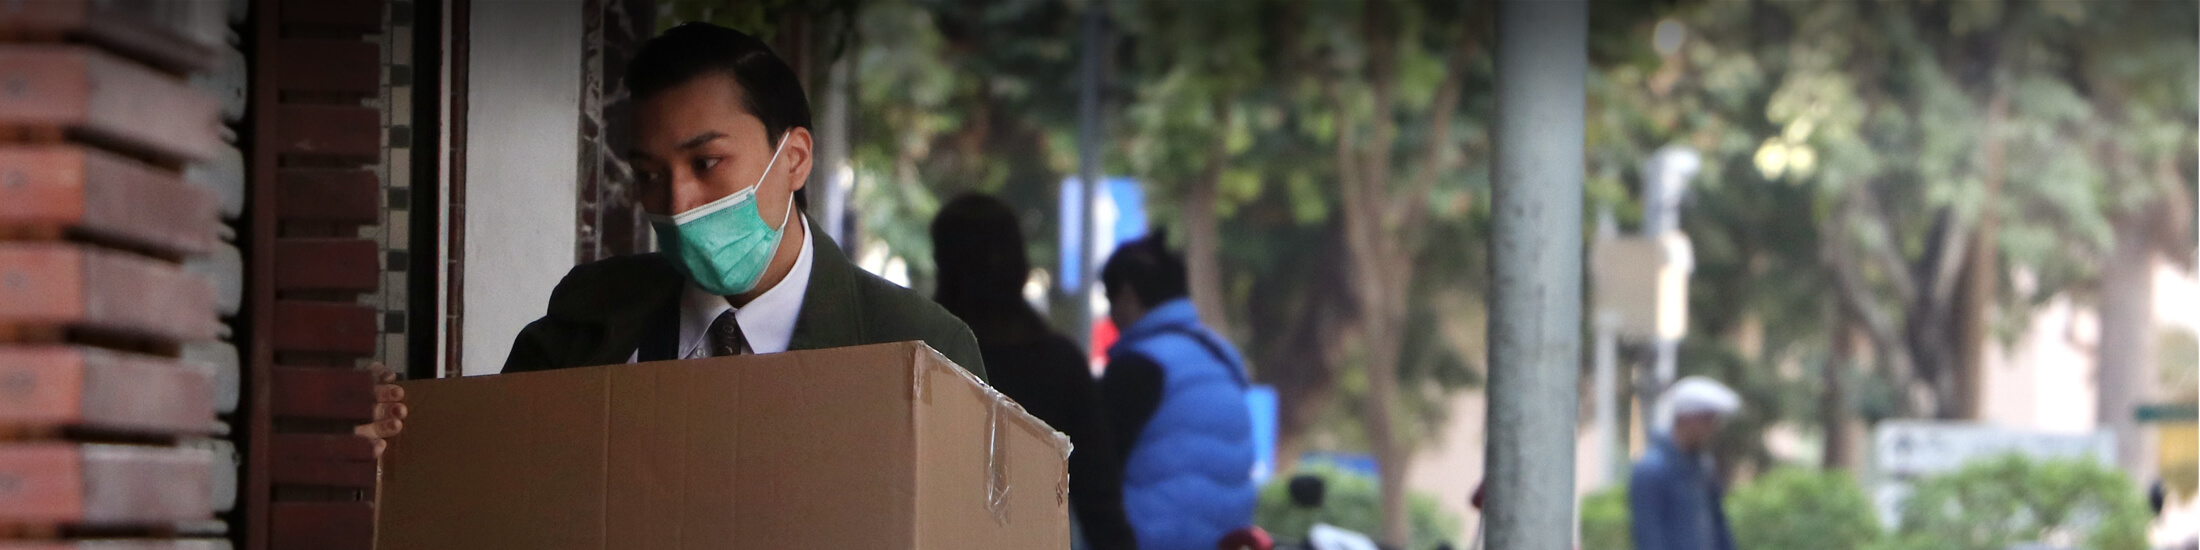 Mann mit einem Mundschutz, trägt eine Kiste.